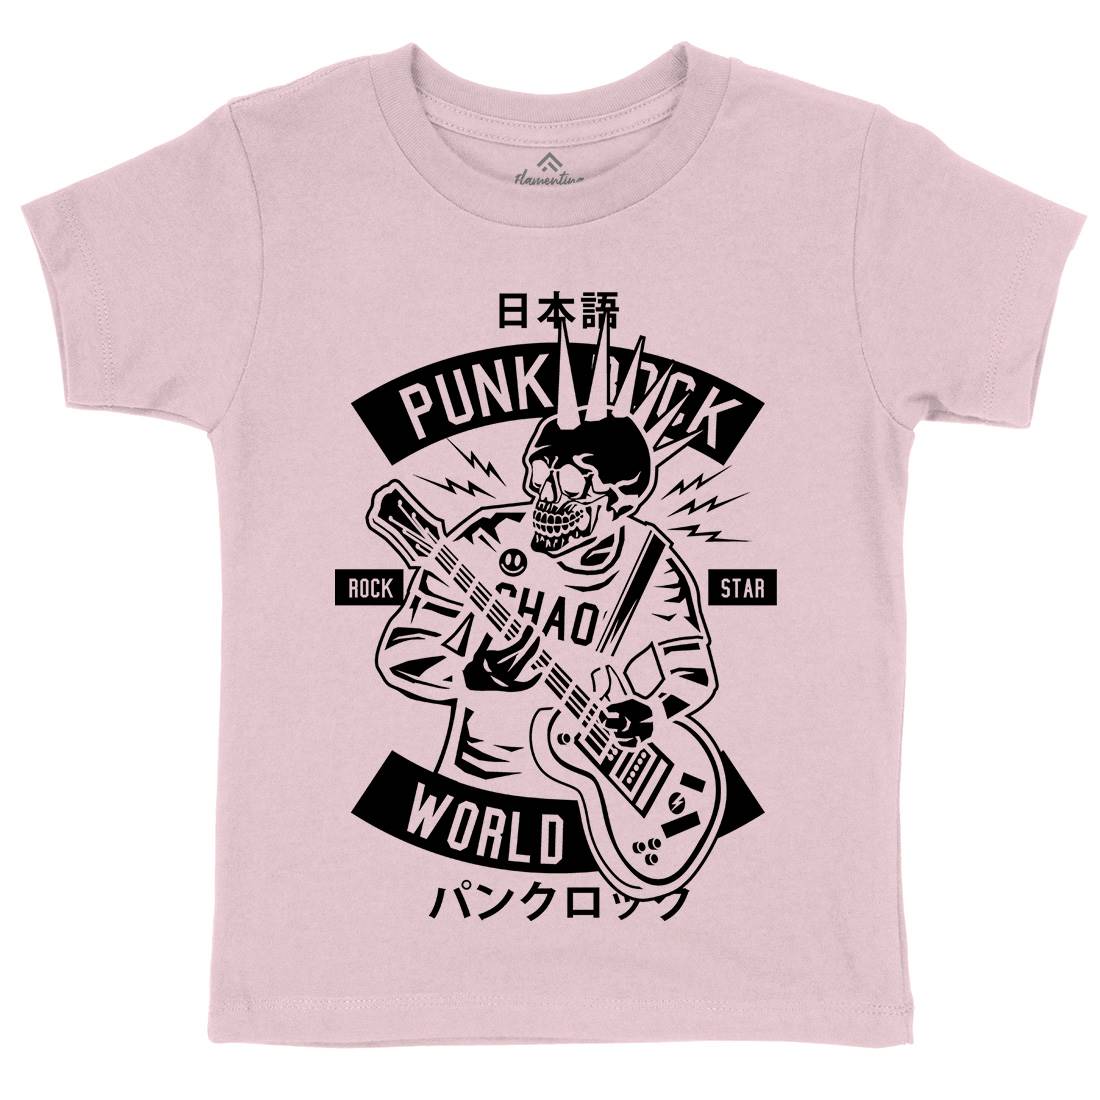 Punk Rock Show Kids Crew Neck T-Shirt Music B606